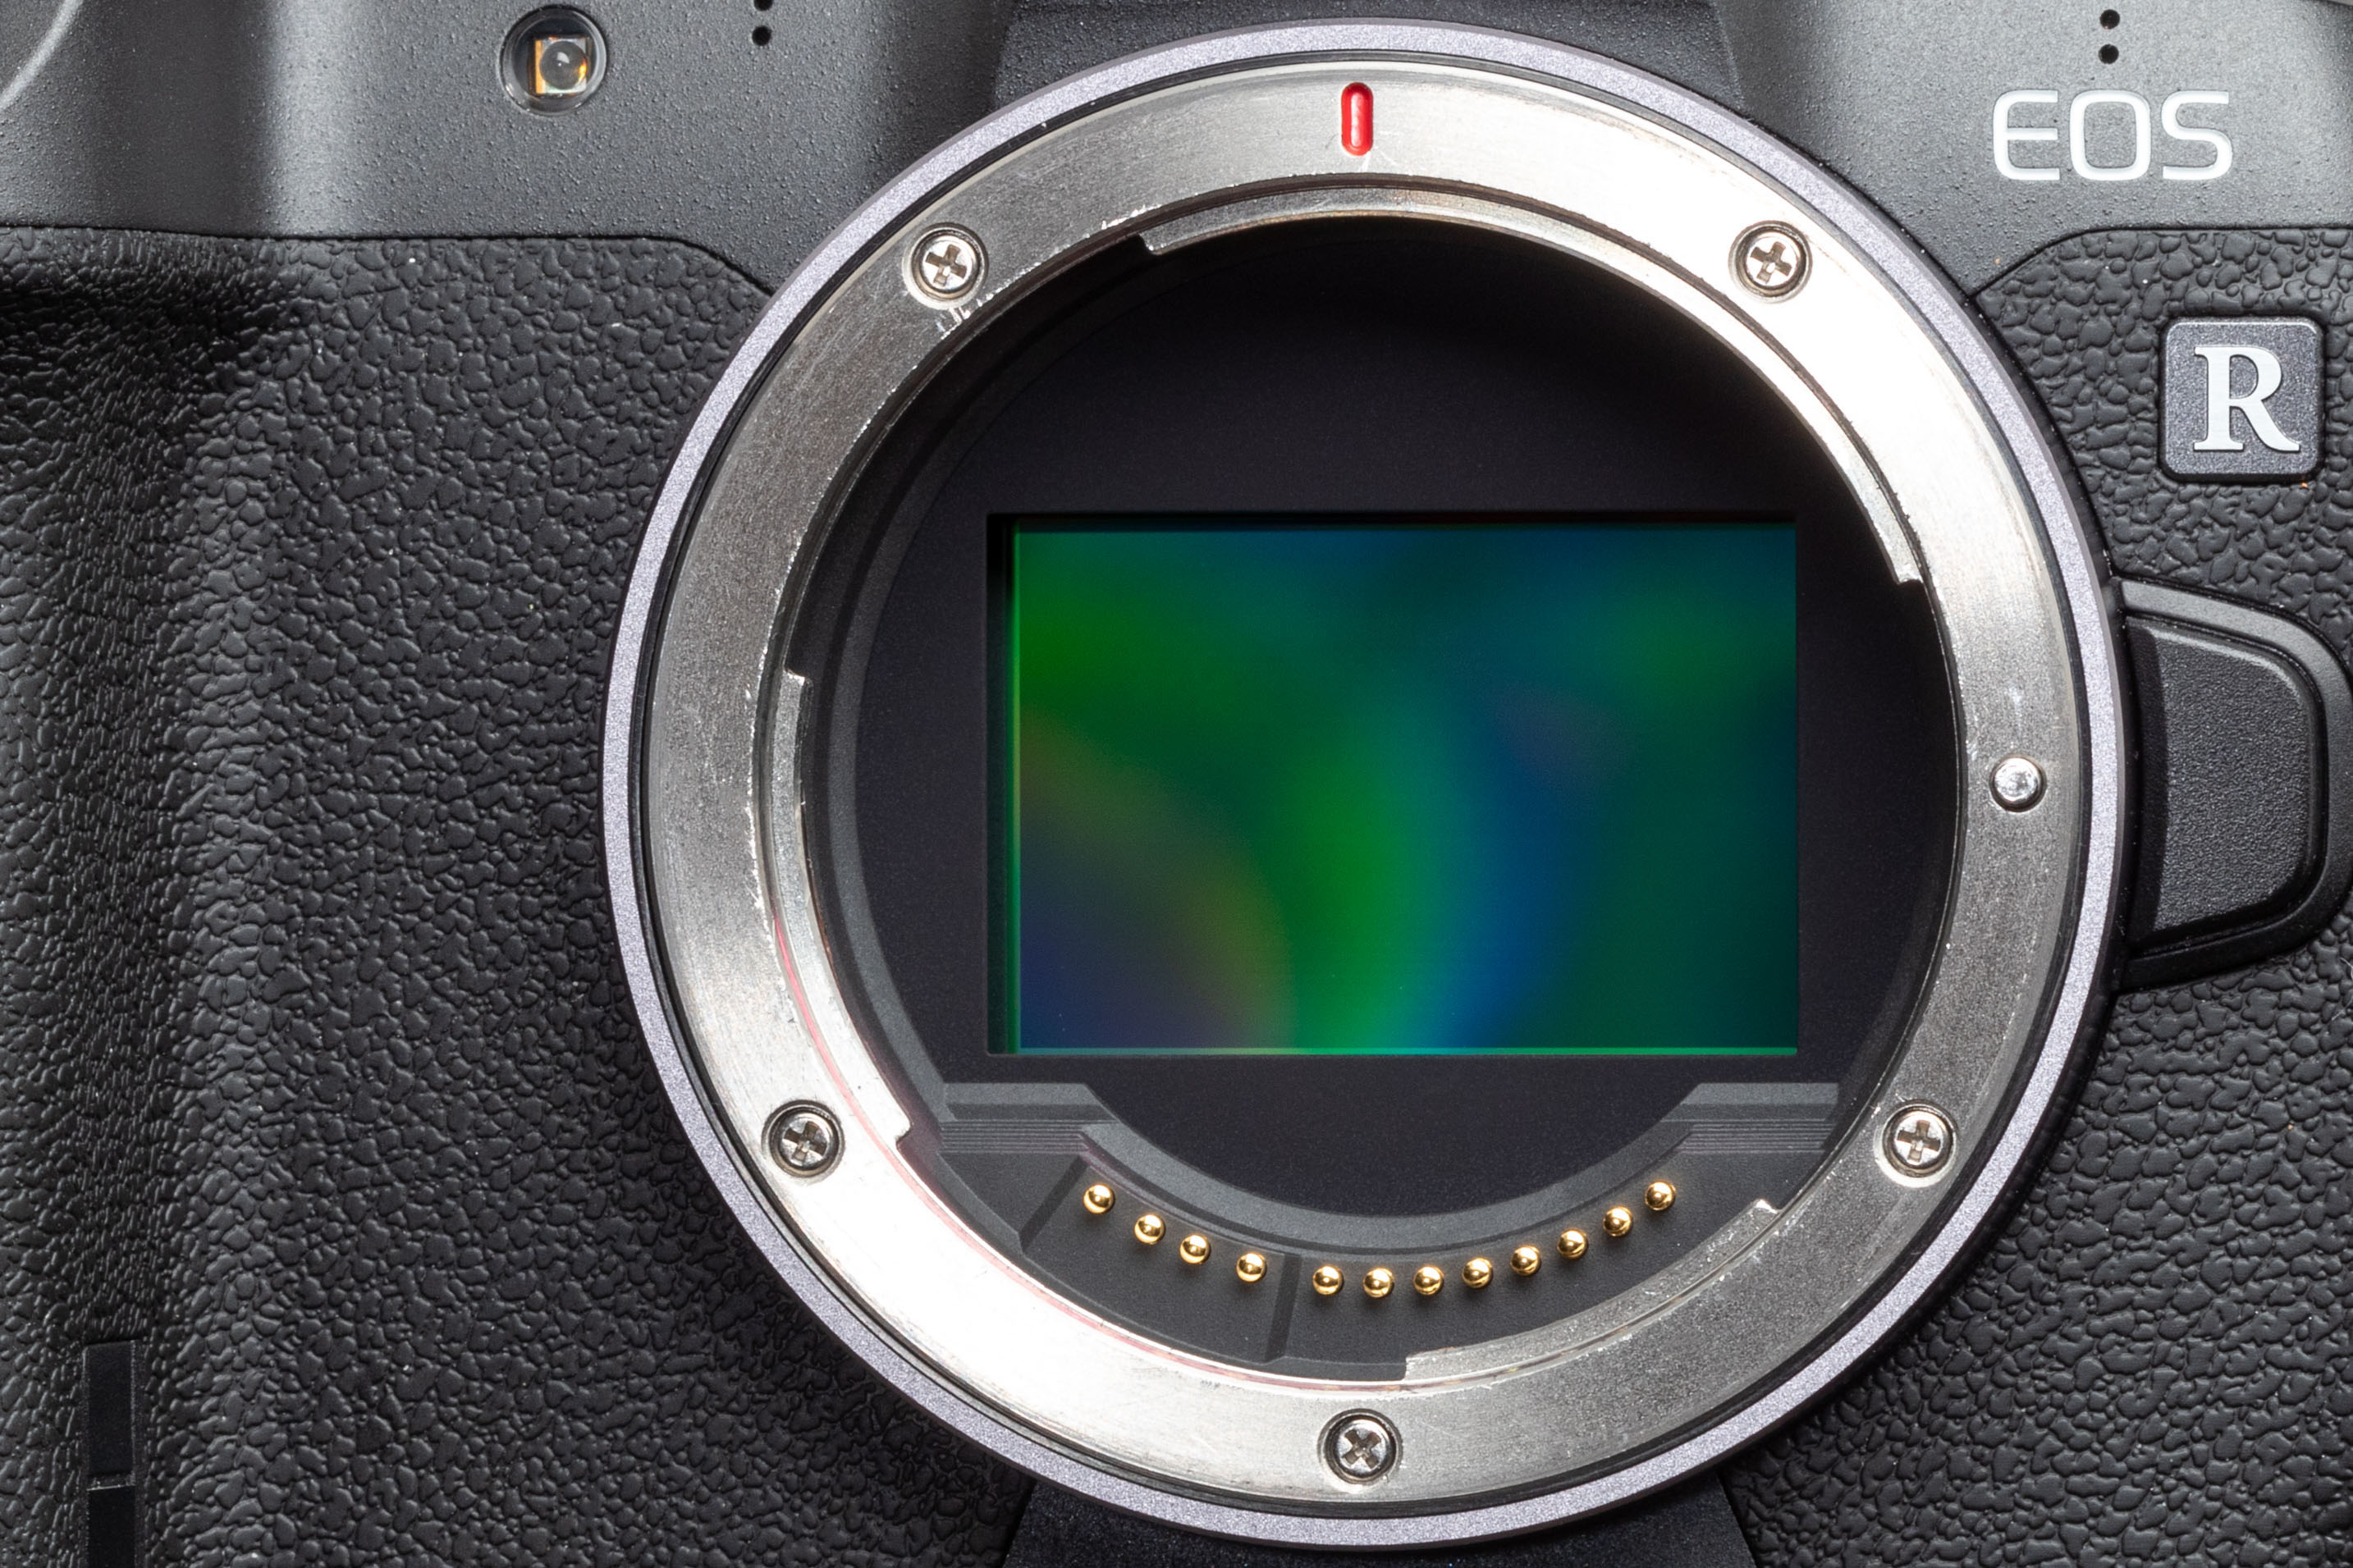 Thế hệ mirrorless tiếp theo của Canon có thể sẽ có cảm biến 45MP chống rung IBIS, quay 8K/30P